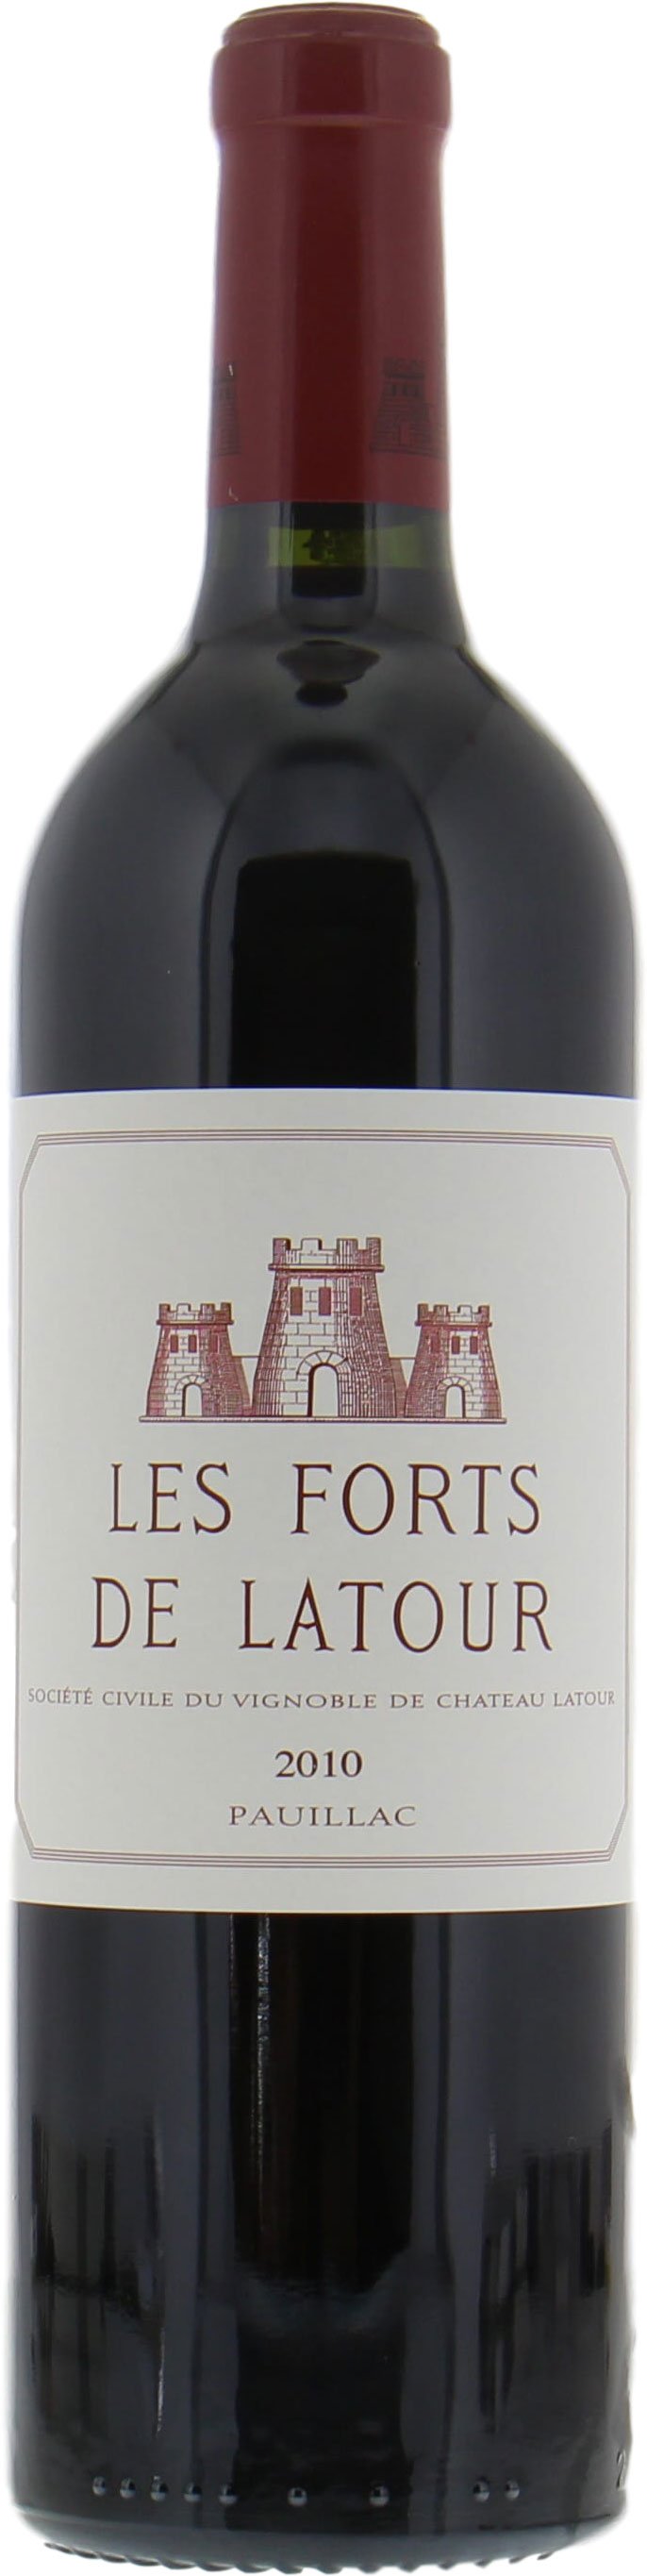 Chateau Latour - Les Forts de Latour 2010